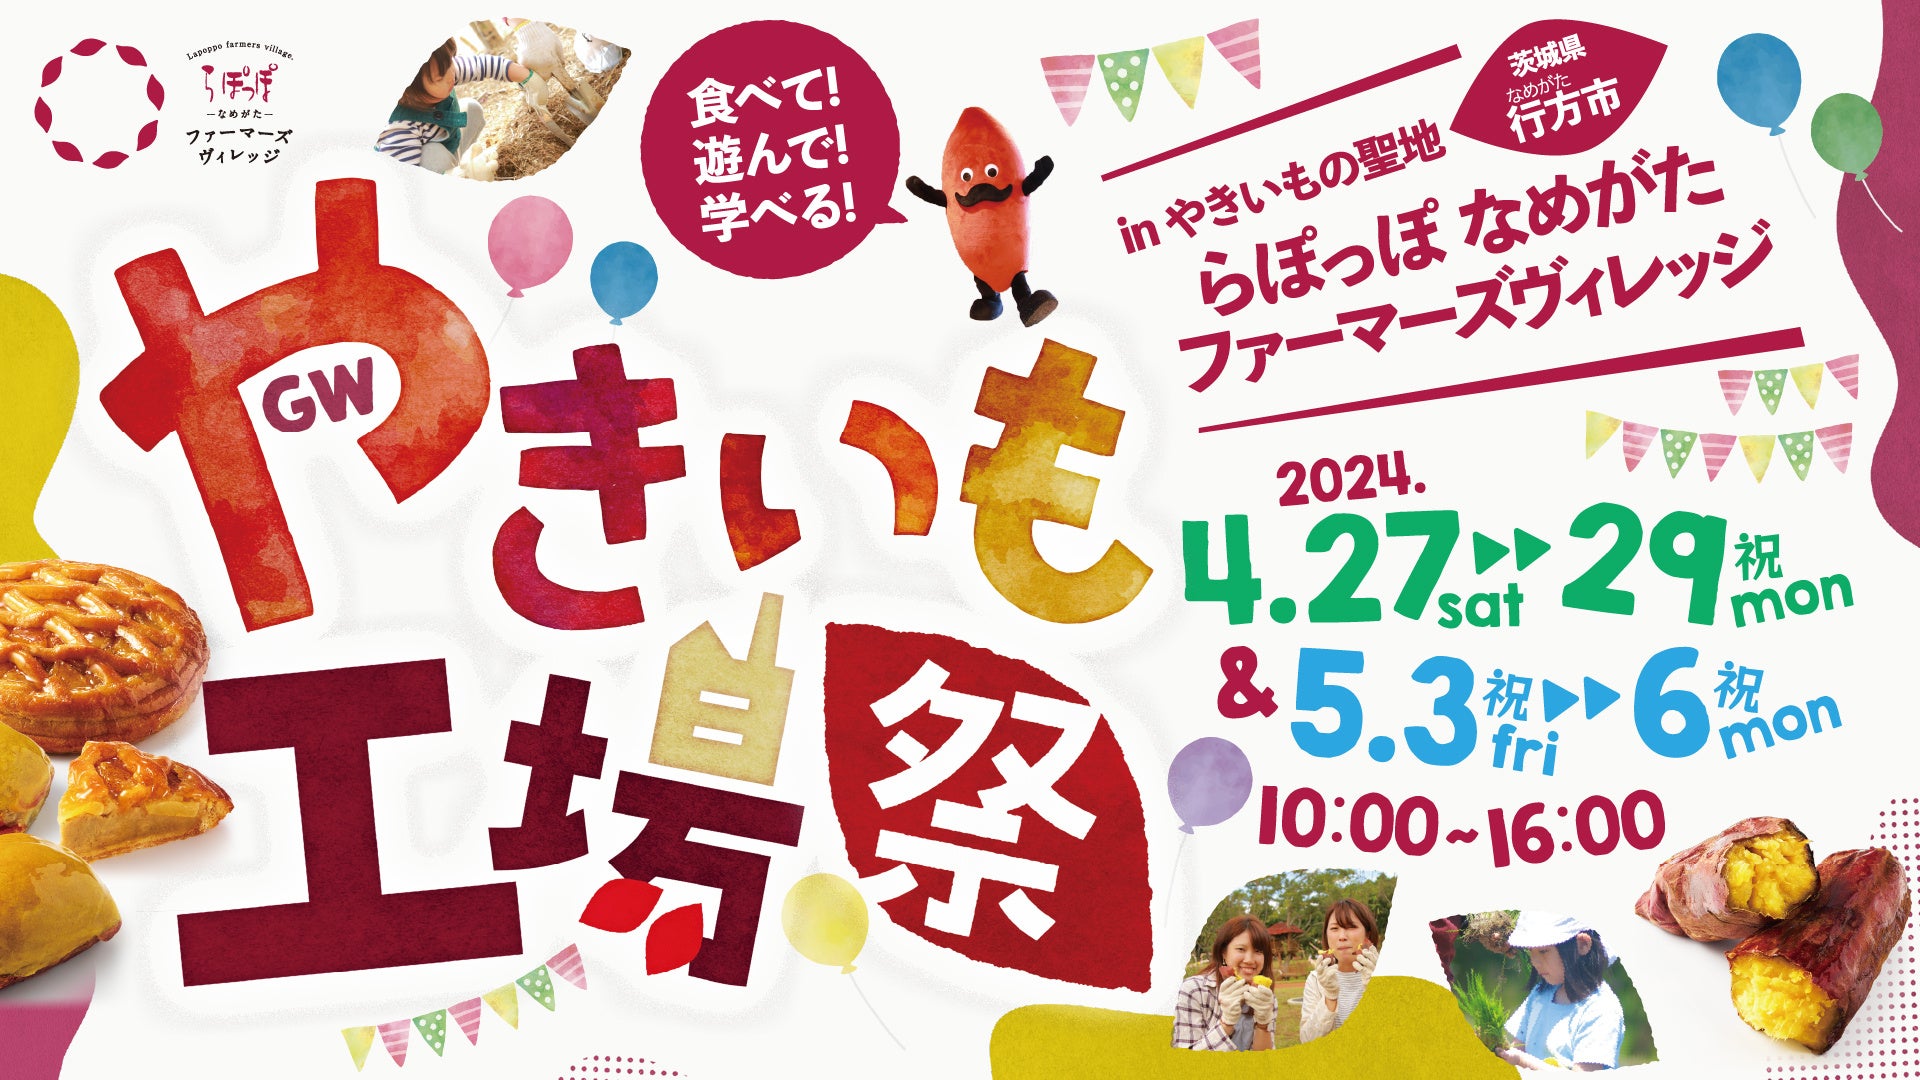 グランフロント大阪 屋上庭園に「大人のビアガーデン」が5/1オープン！